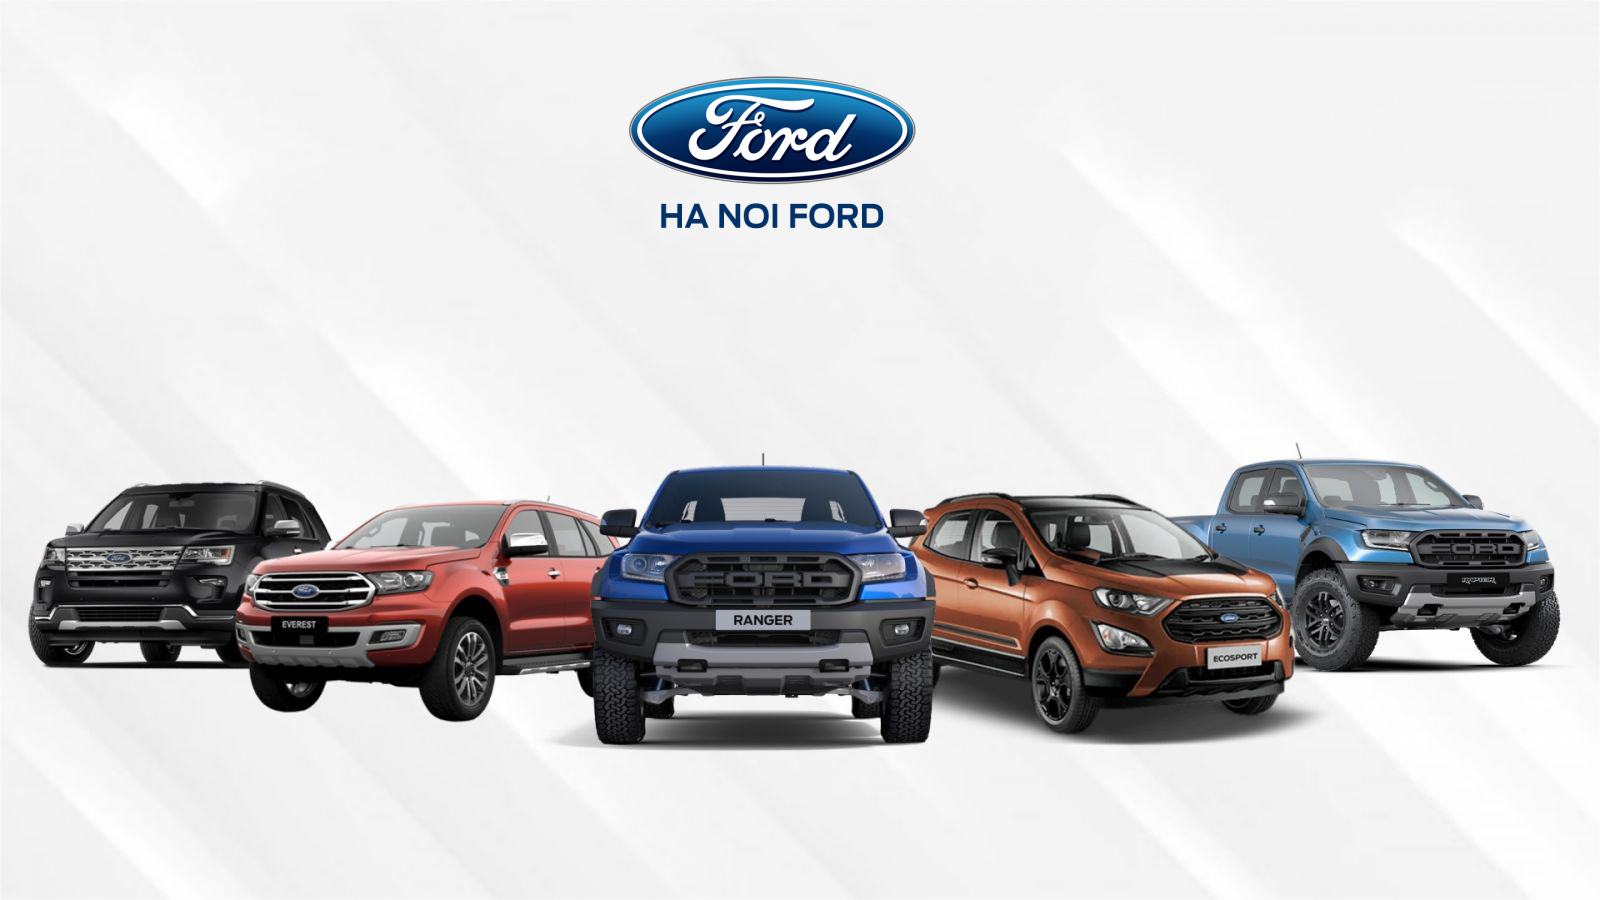 Tìm hiểu về tải trọng xe bán tải Ford Ranger hiện nay